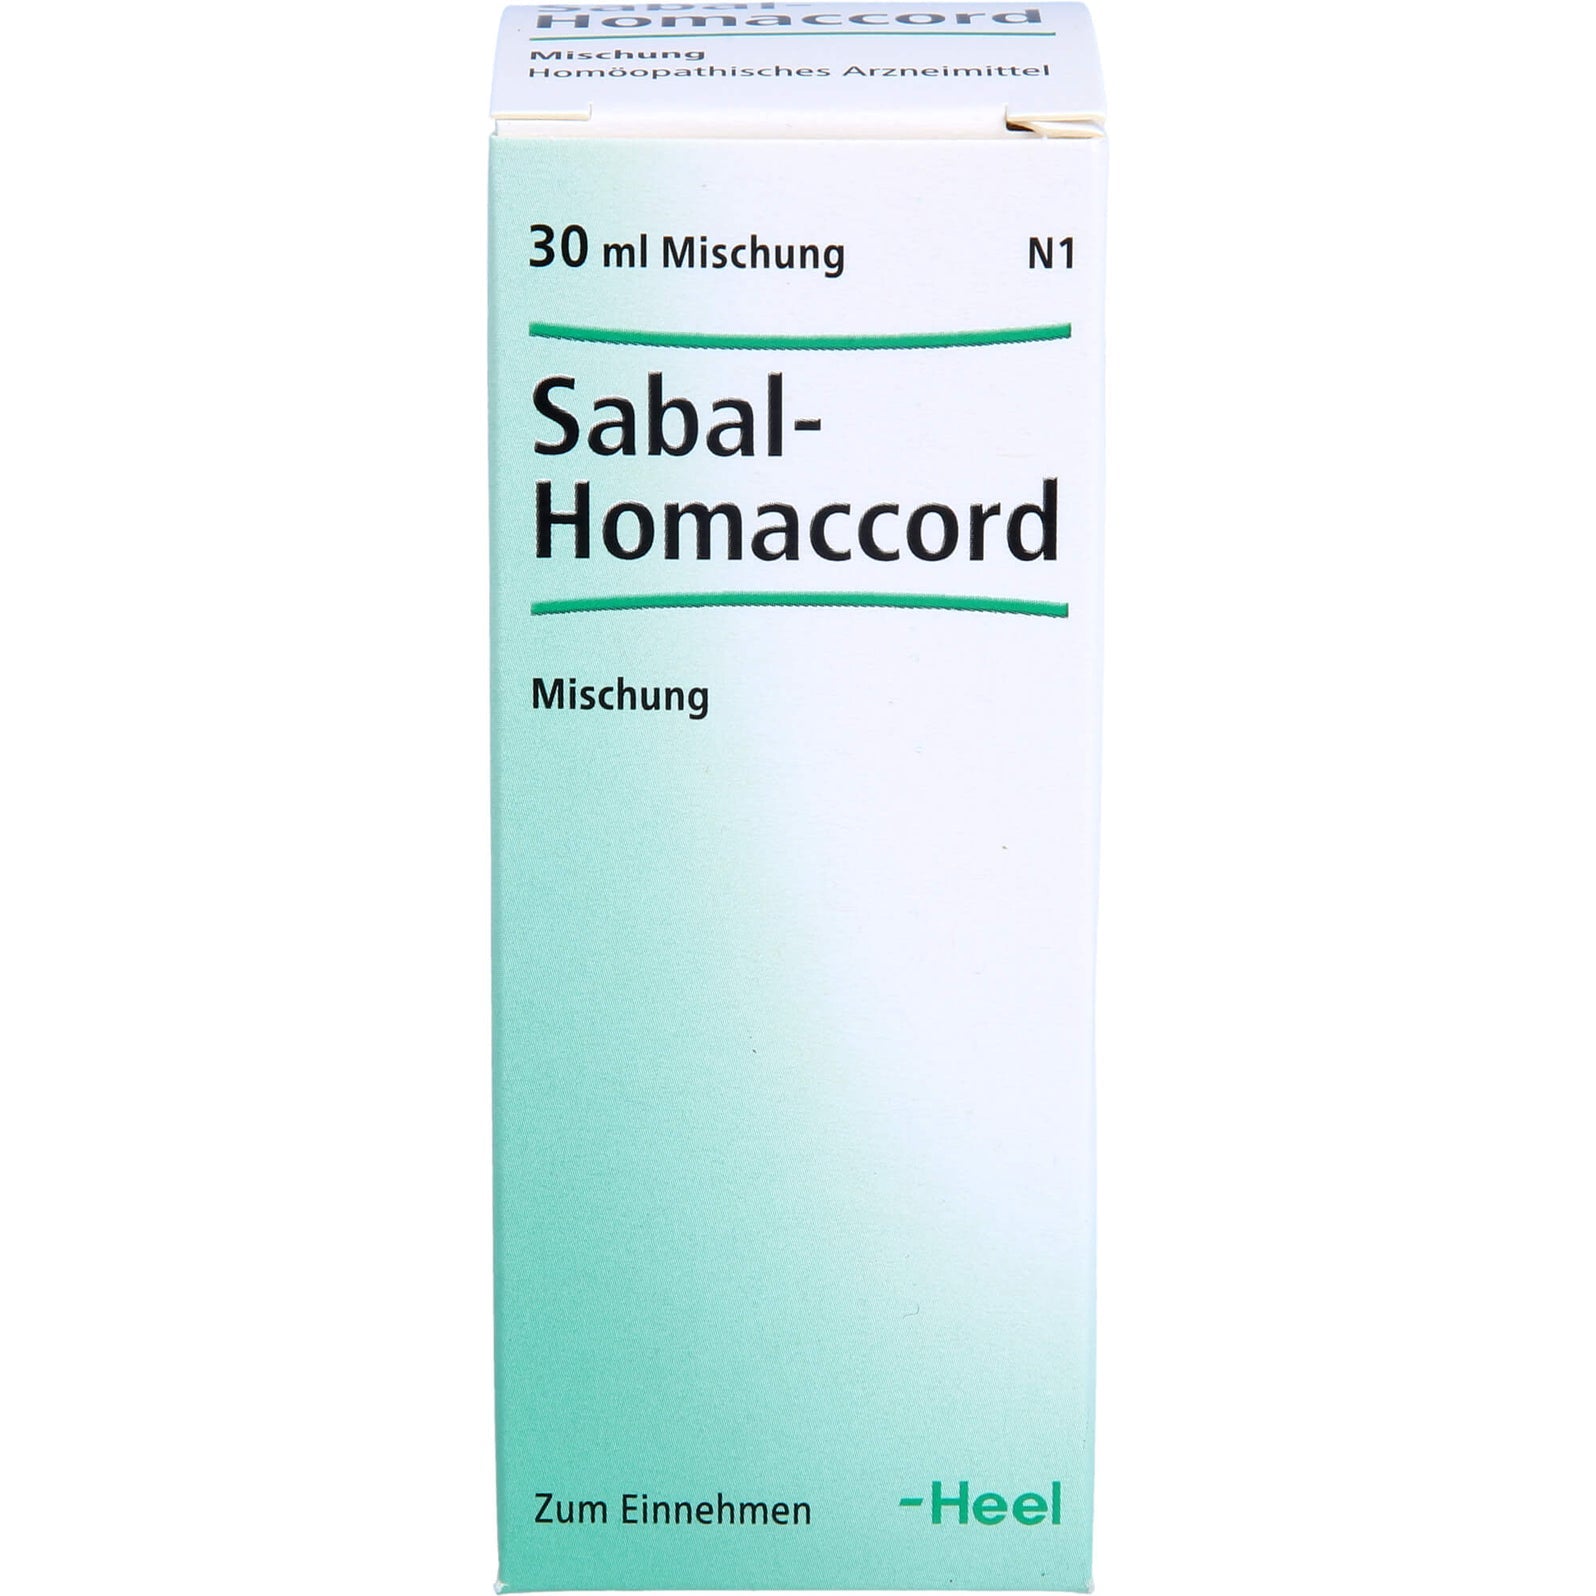 Heel Sabal Homaccord (30mL)